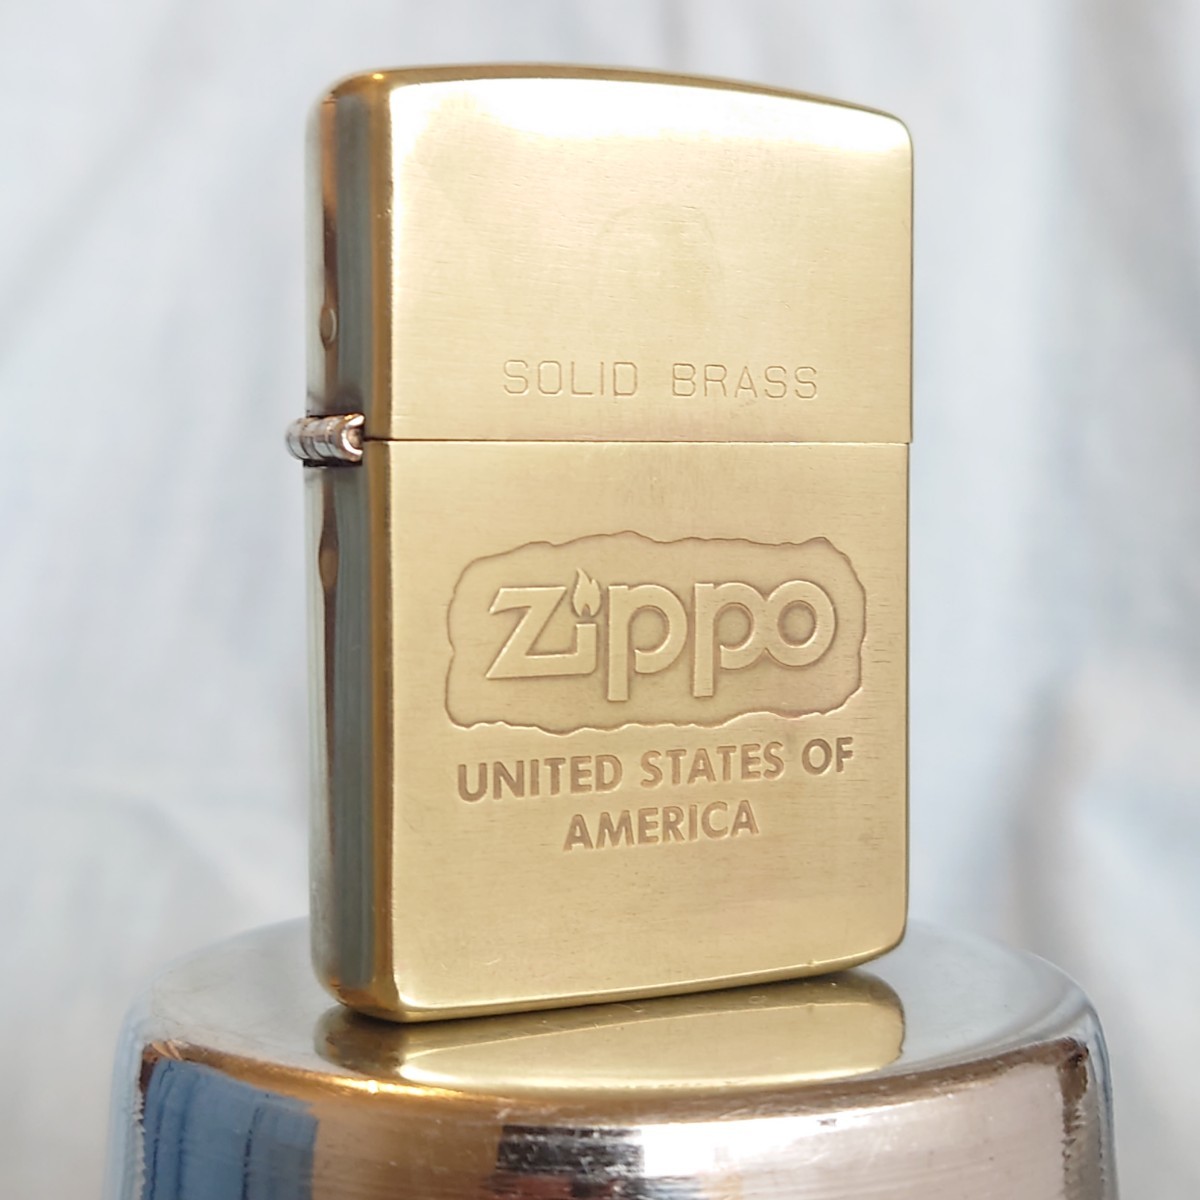 Yahoo!オークション -「zippo solid brass 真鍮」の落札相場